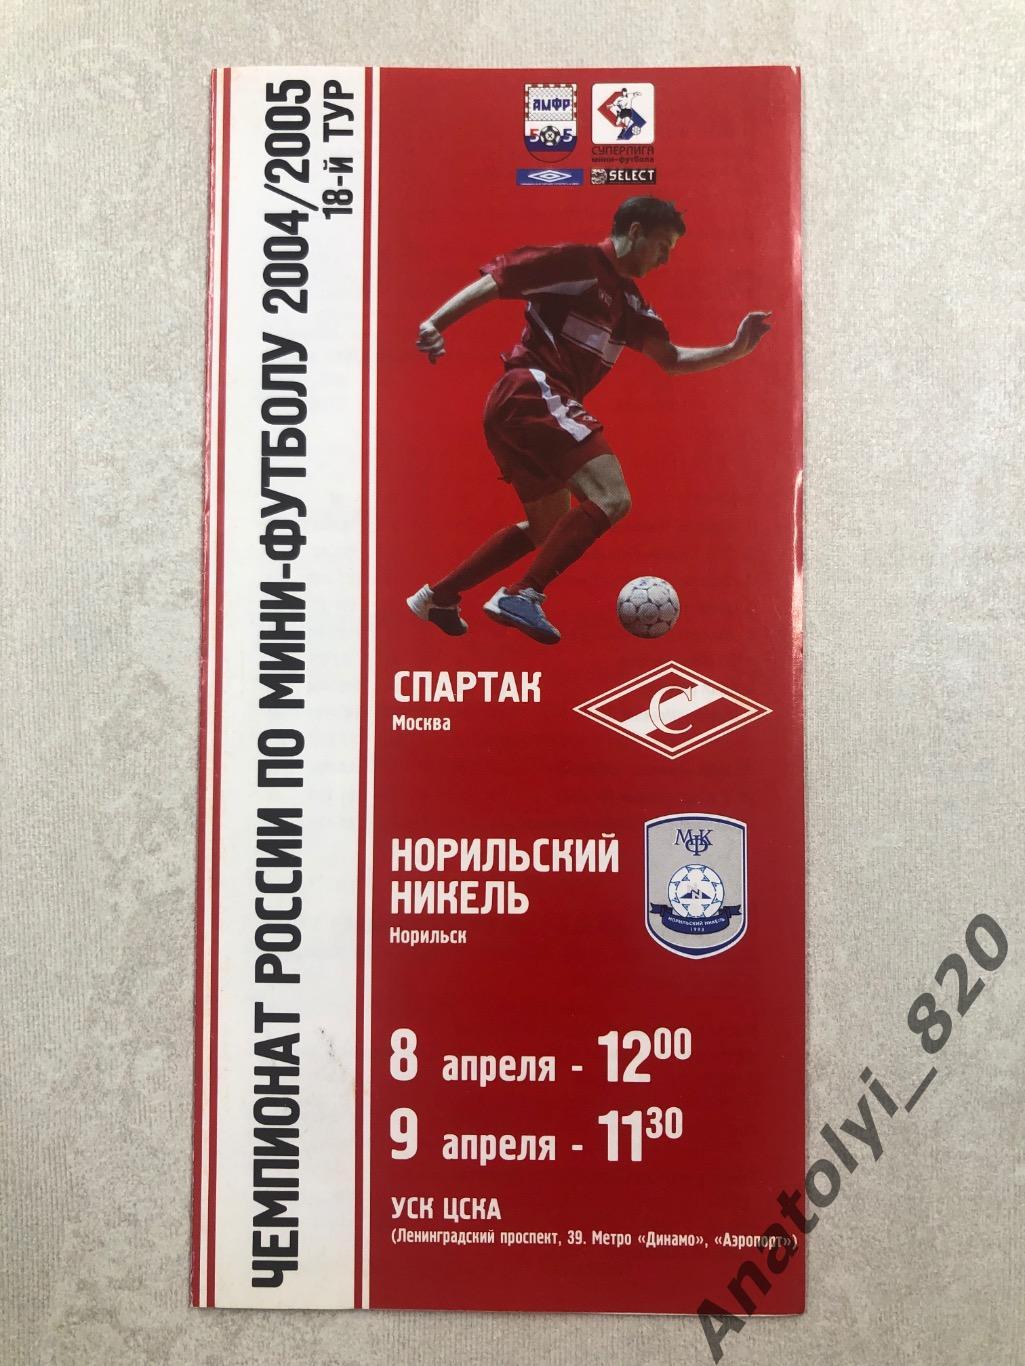 Спартак Москва - Норильский никель Норильск, 8-9 апреля 2005 года